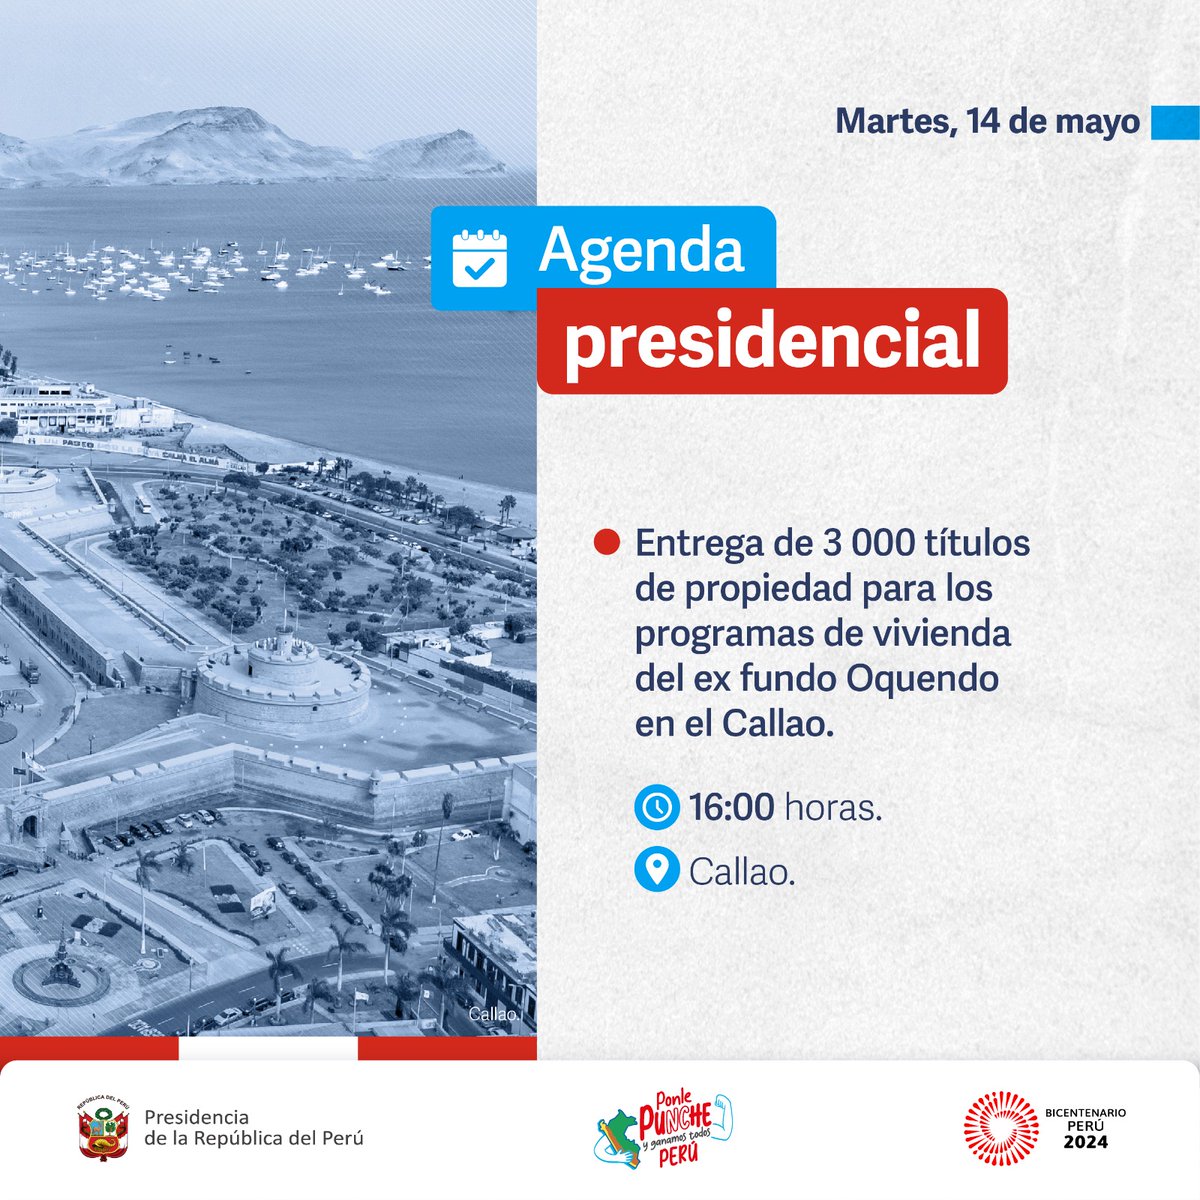 🇵🇪 #AgendaPresidencial | La presidenta Dina Ercilia Boluarte Zegarra participará en la entrega de títulos de propiedad para los programas de vivienda en el #Callao.

#BicentenarioPerú2024 #ConPunchePerú 💪